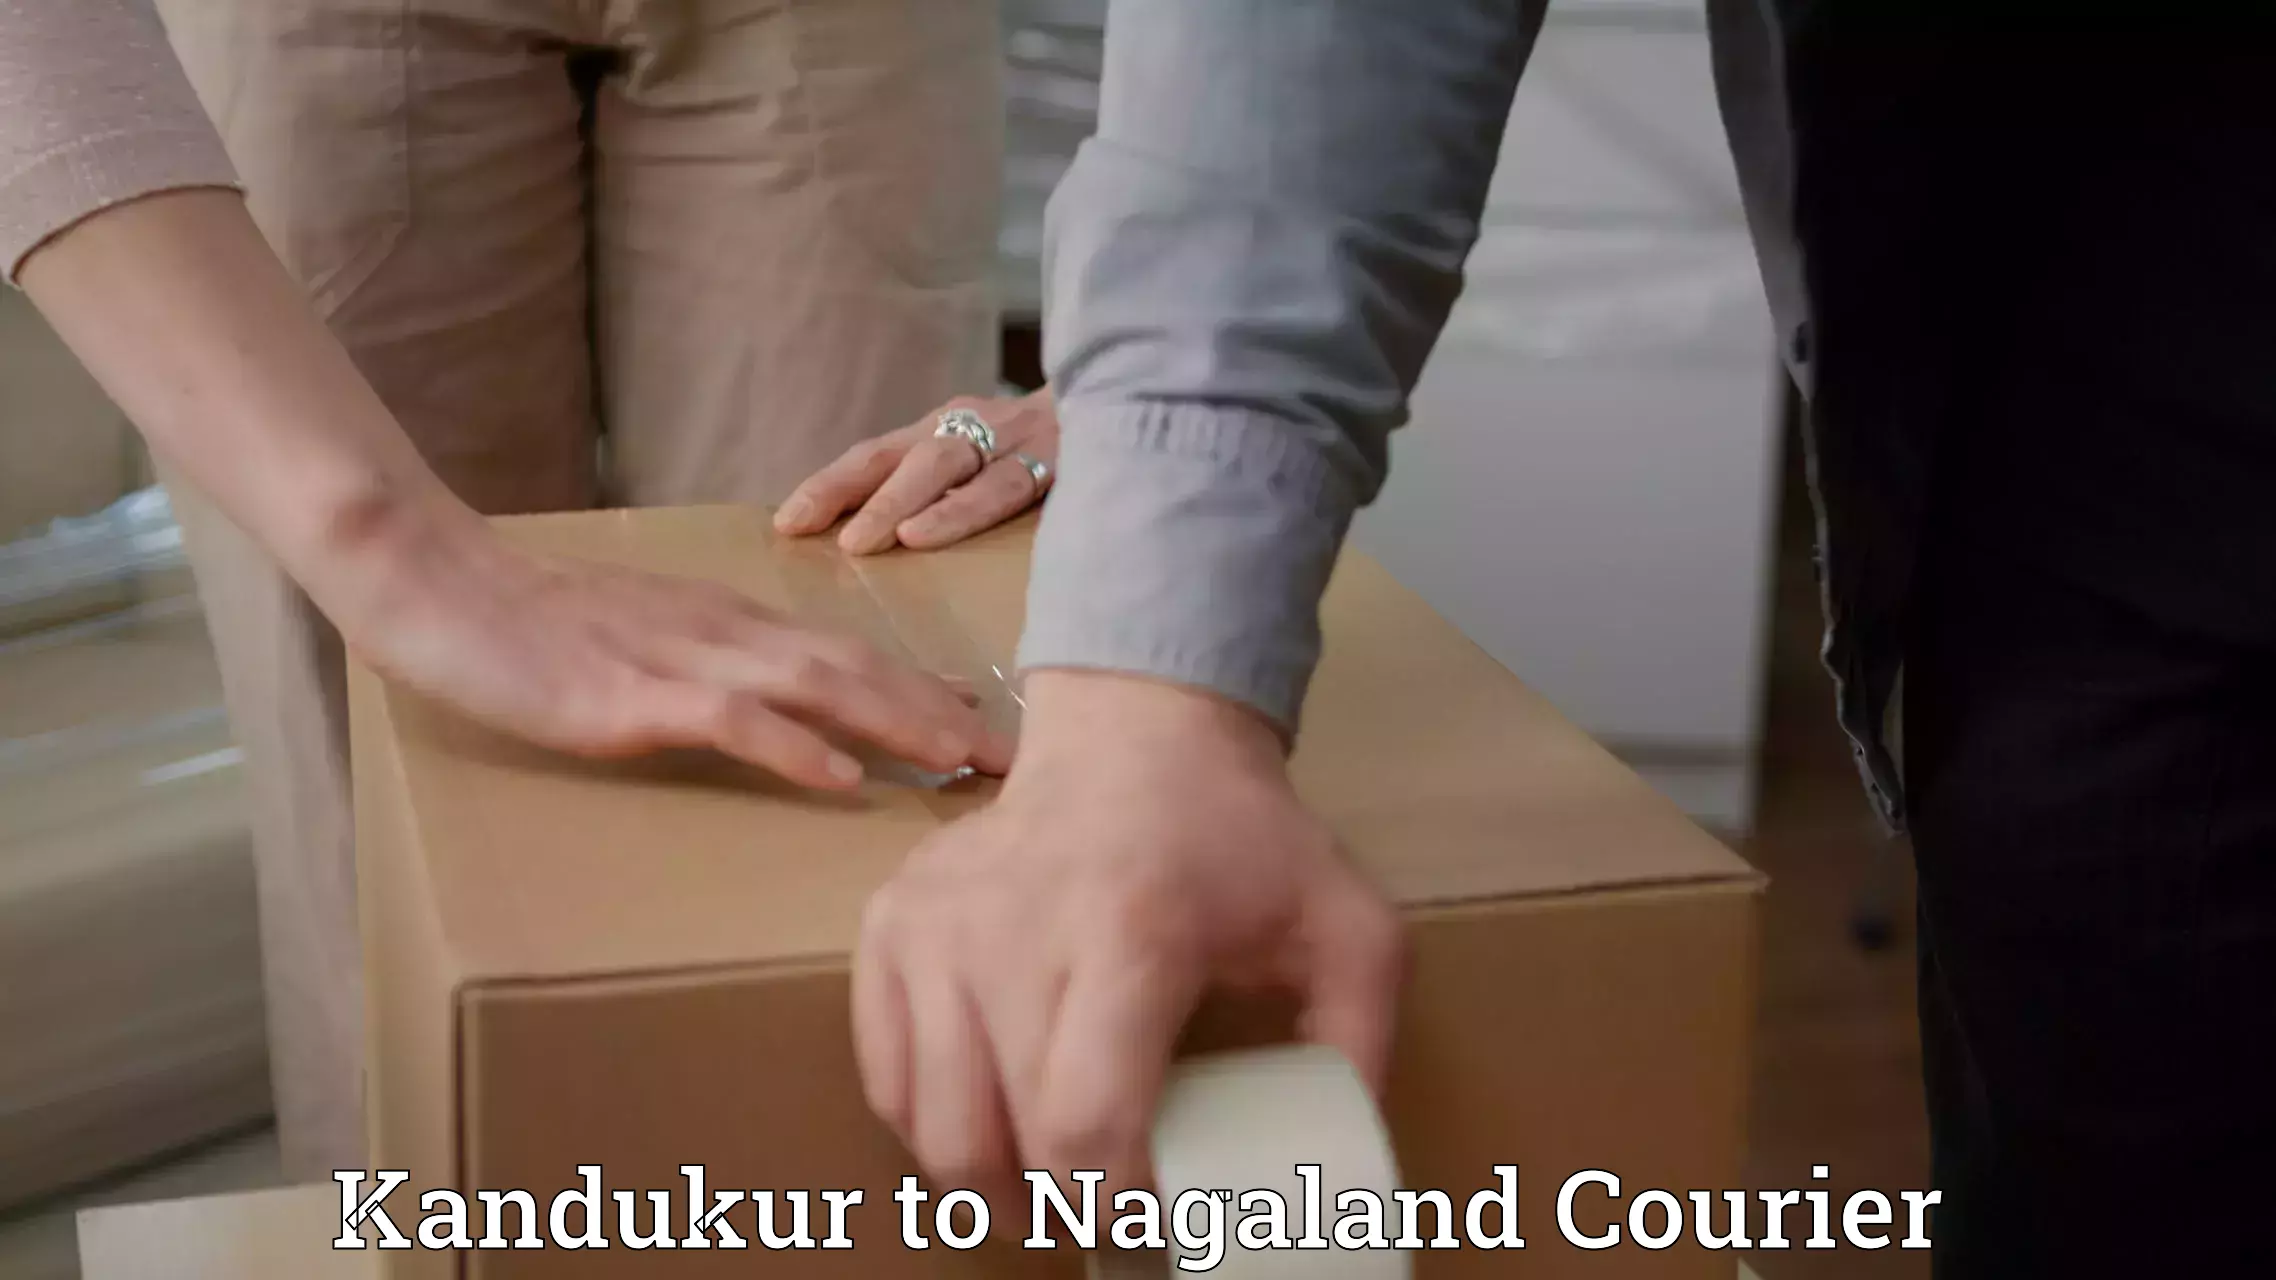 Expedited shipping methods Kandukur to Nagaland